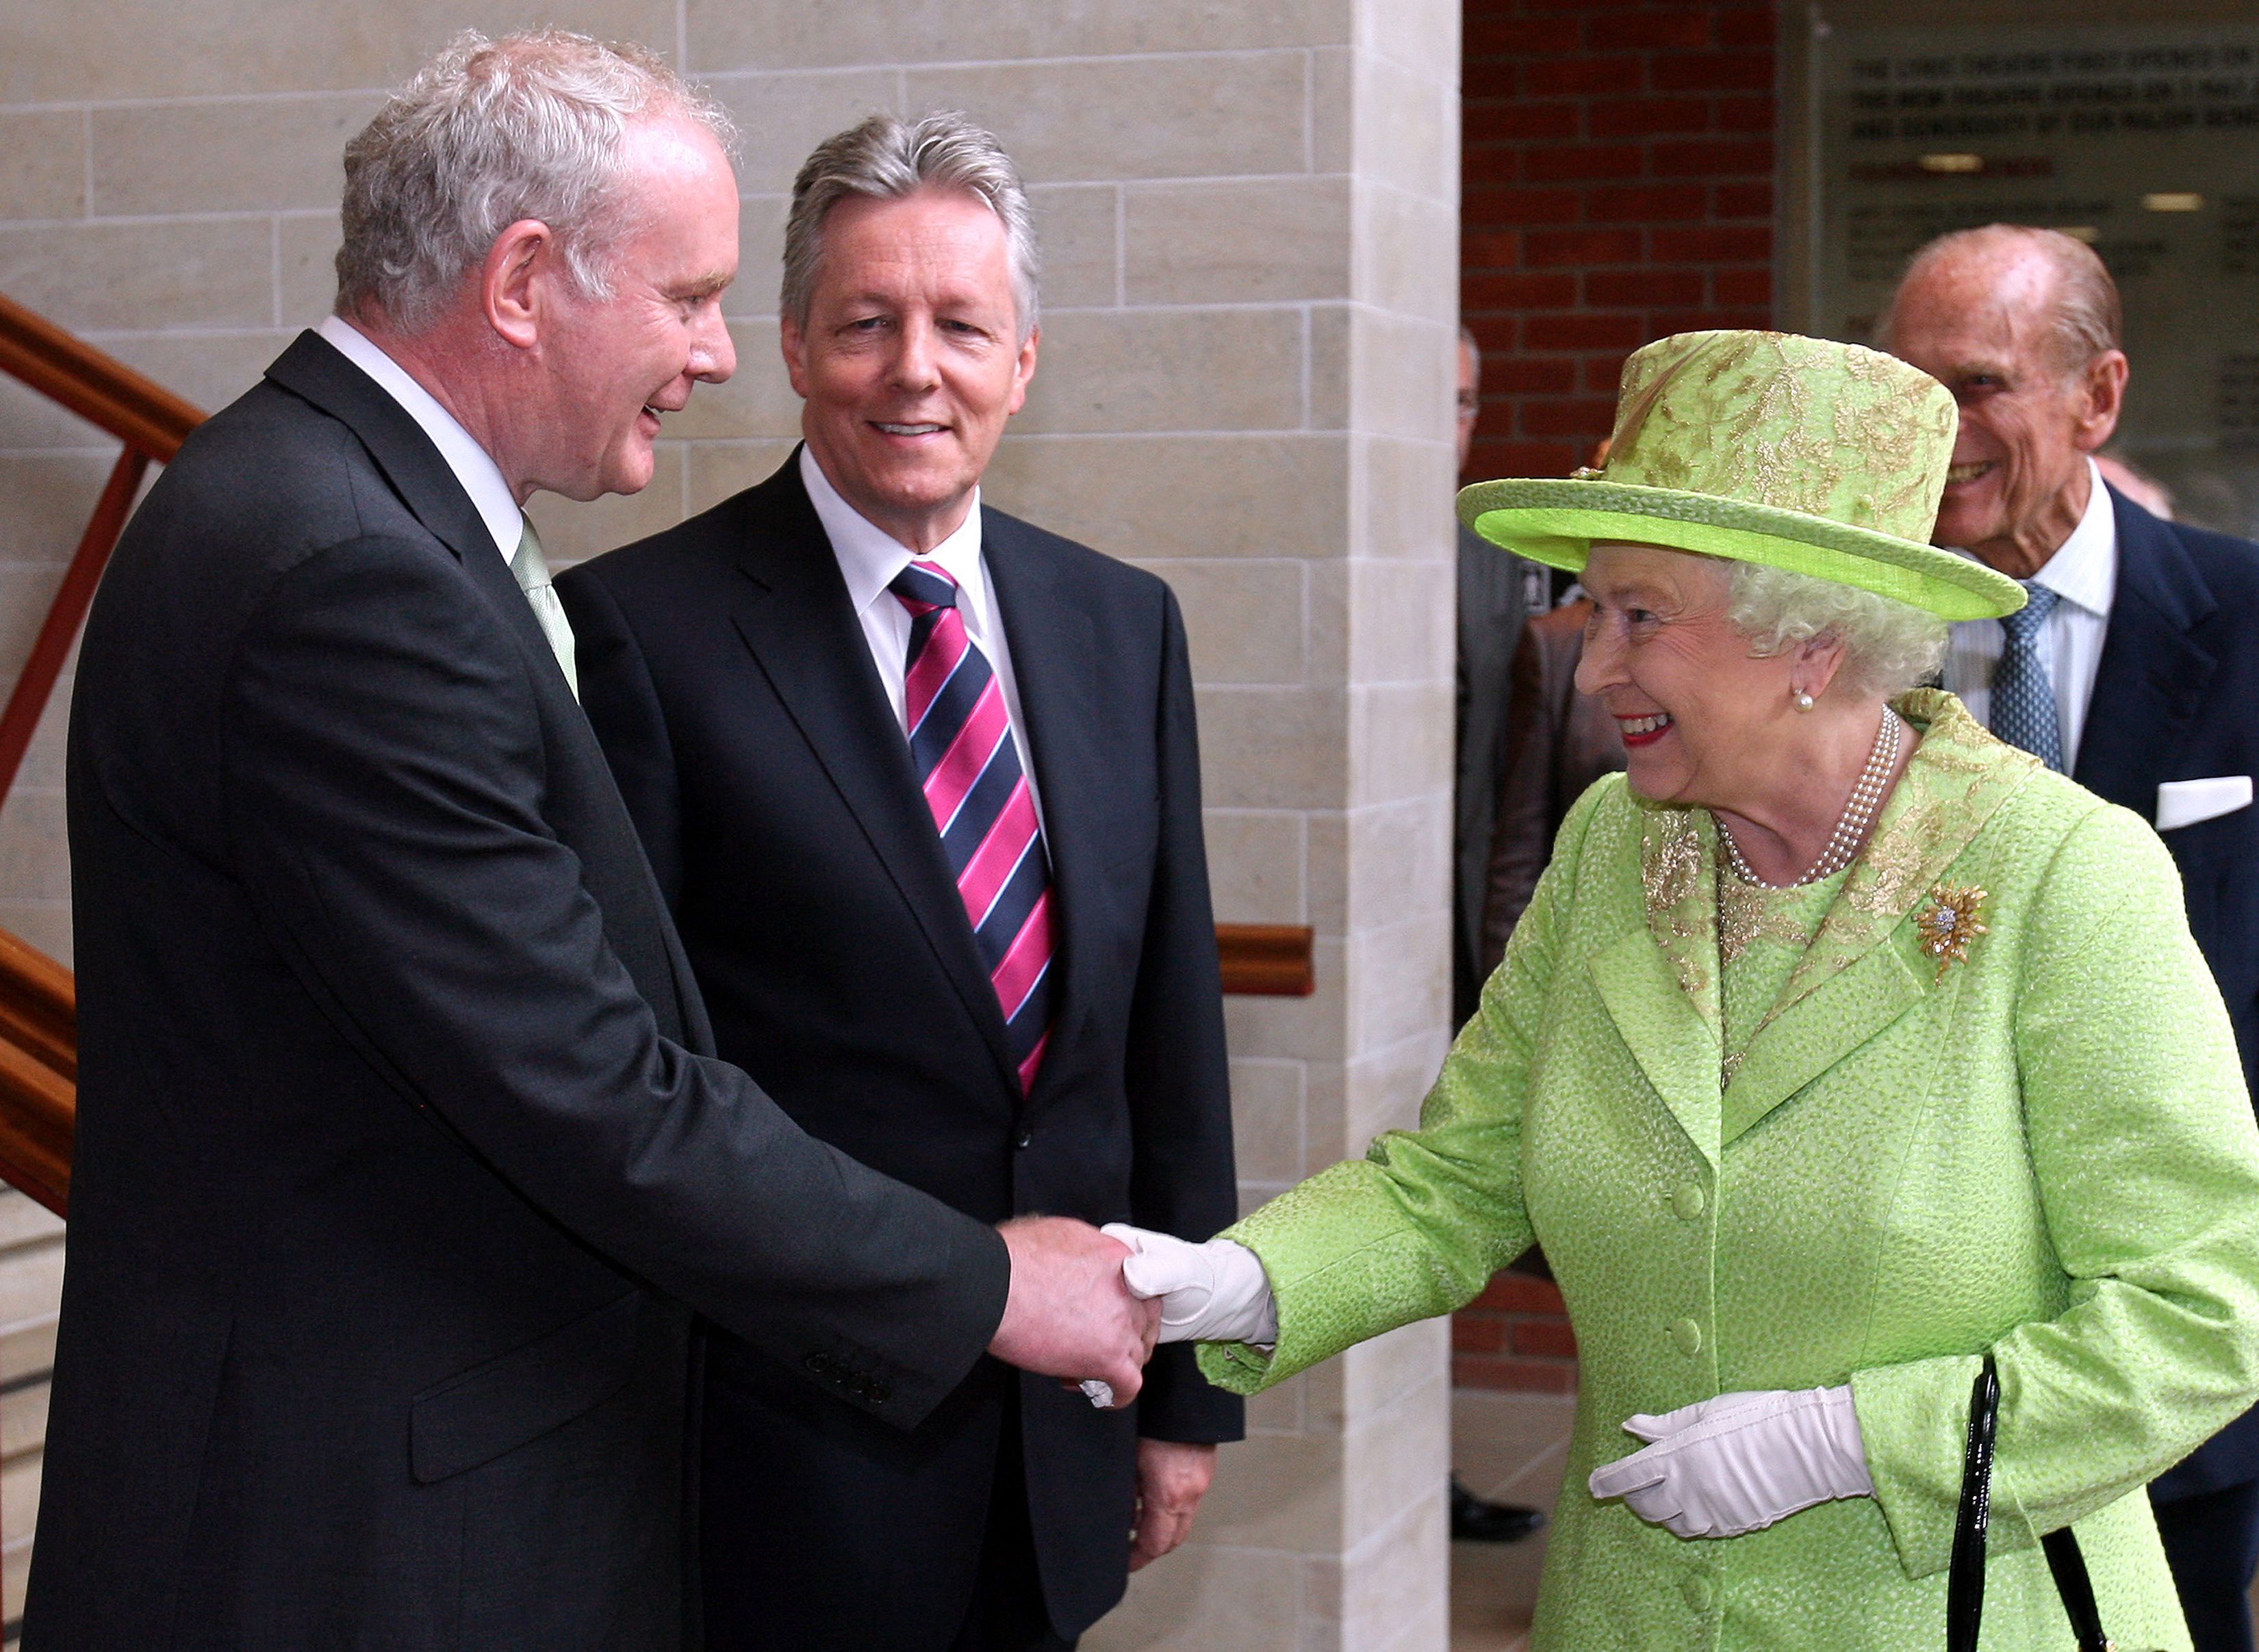 McGuinness begrüßt die Königin 2012 in Belfast